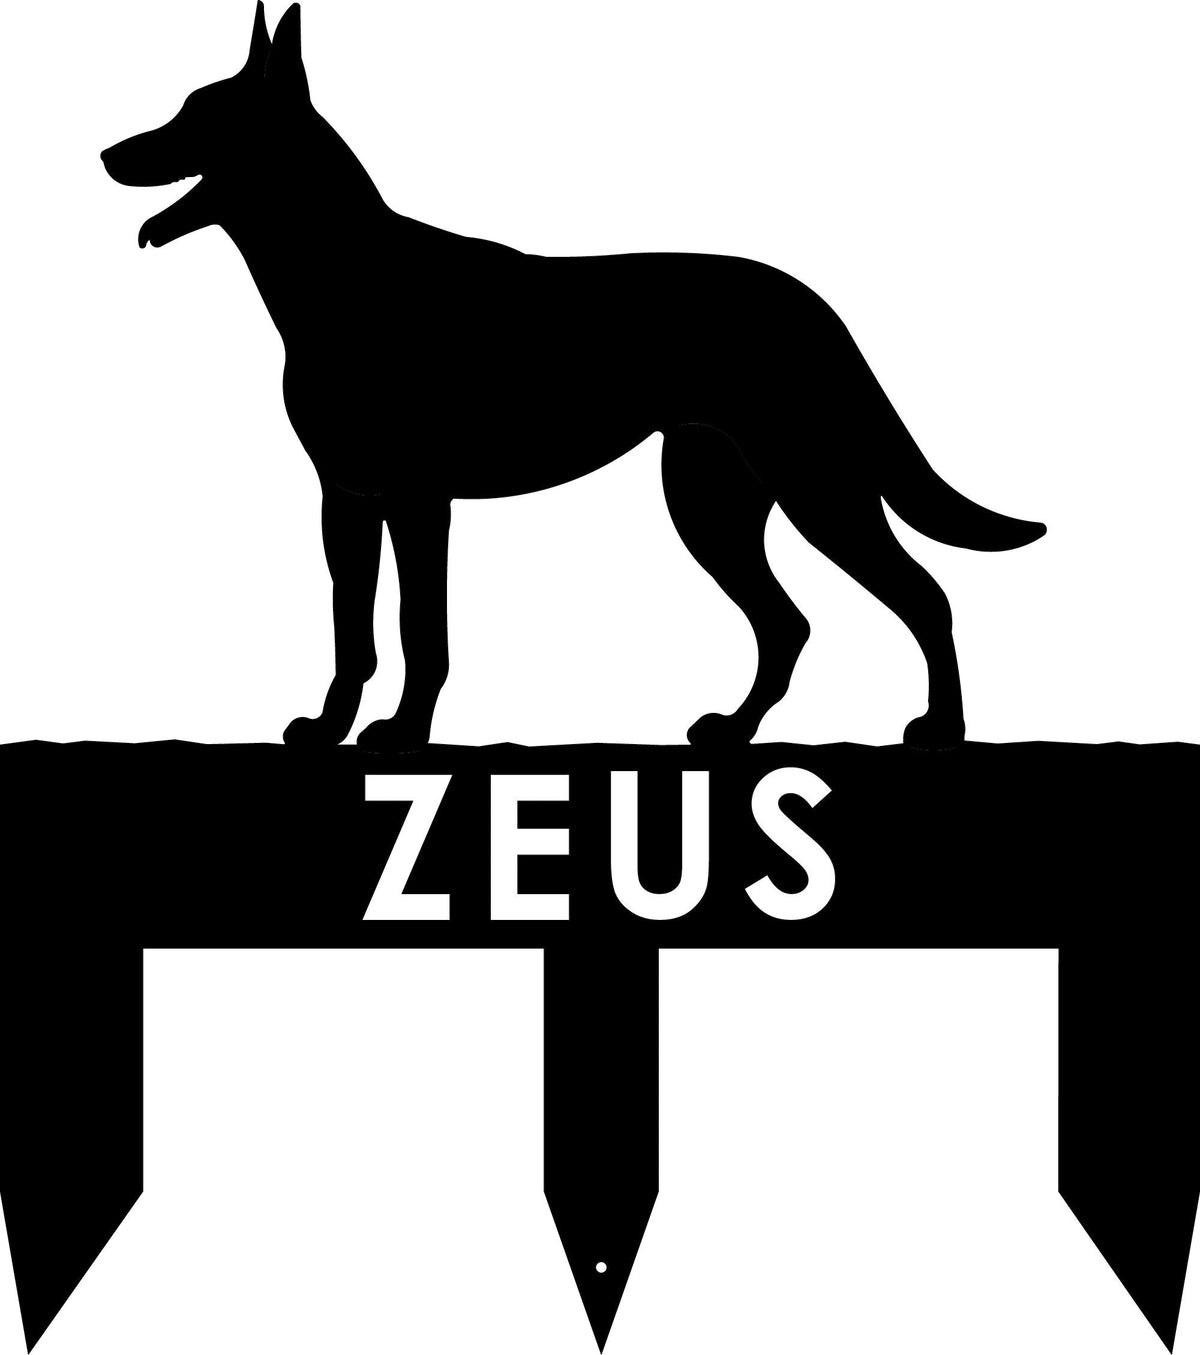 Belgian Malinois dog address stake